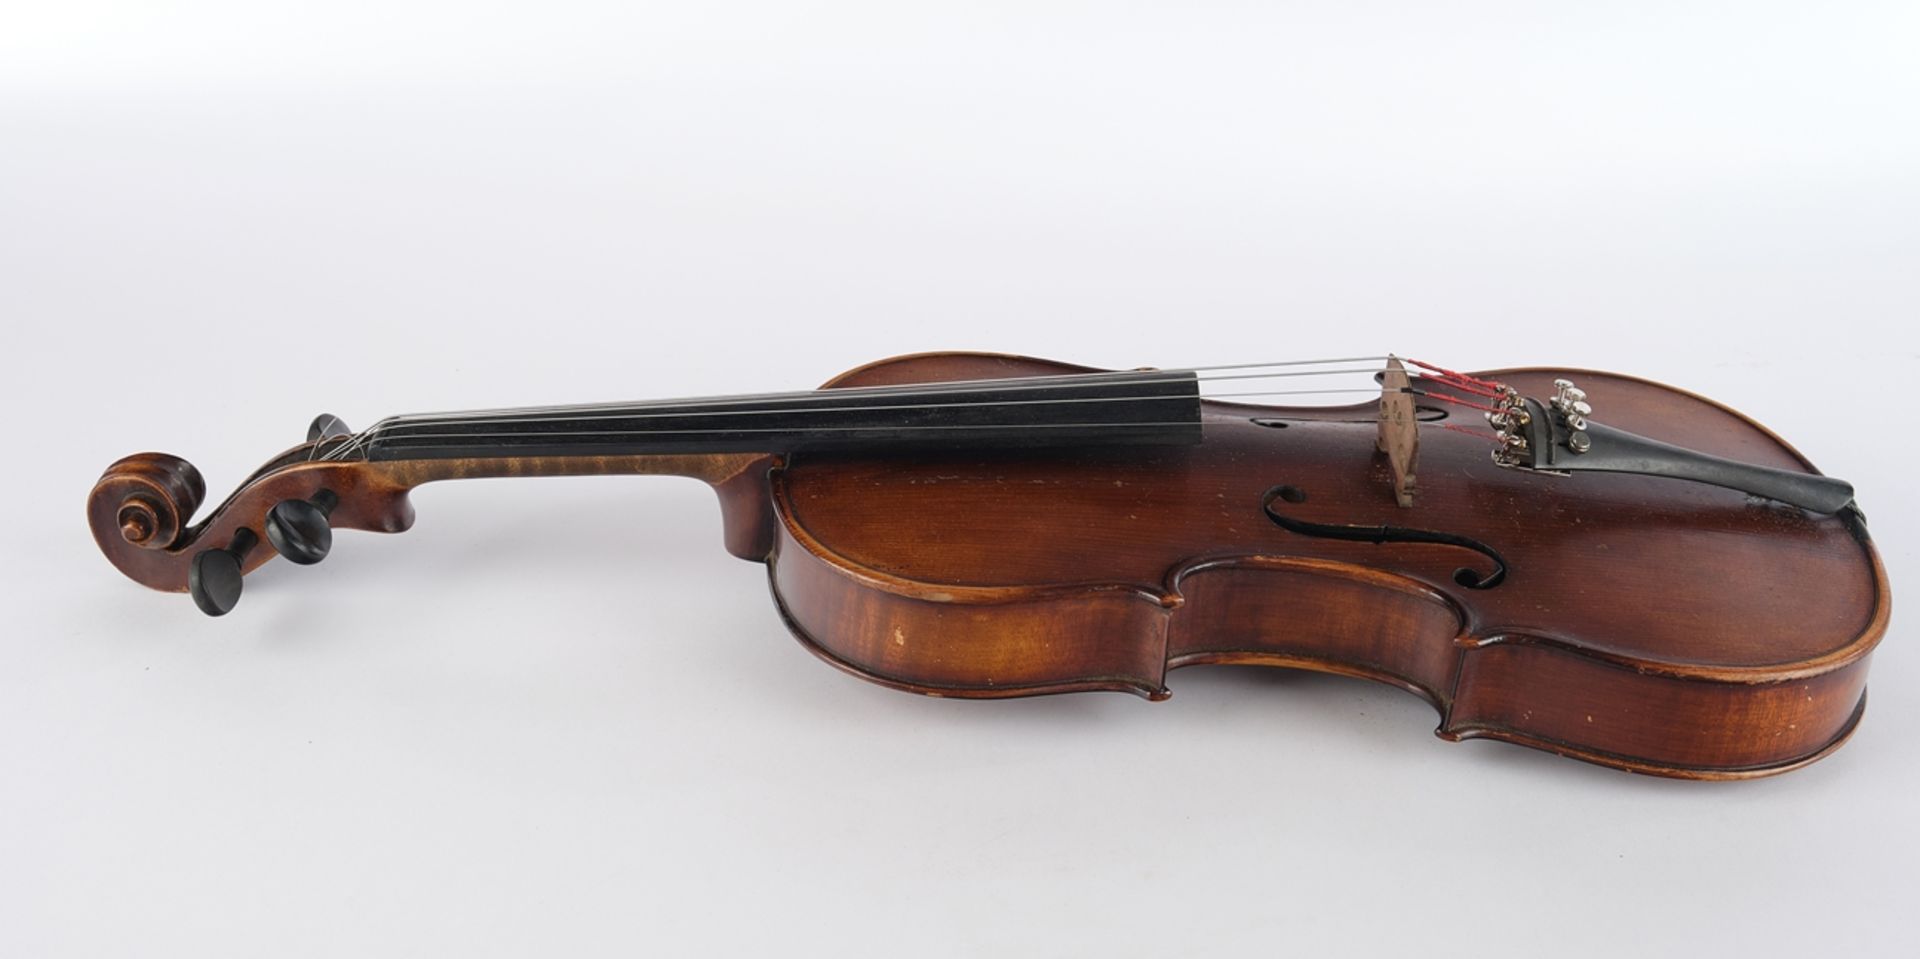 Violine, brauner Holzkorpus, unbezeichnet, 60 cm lang, mit Bogen und Koffer, Alters- und Gebrauchss - Bild 3 aus 8